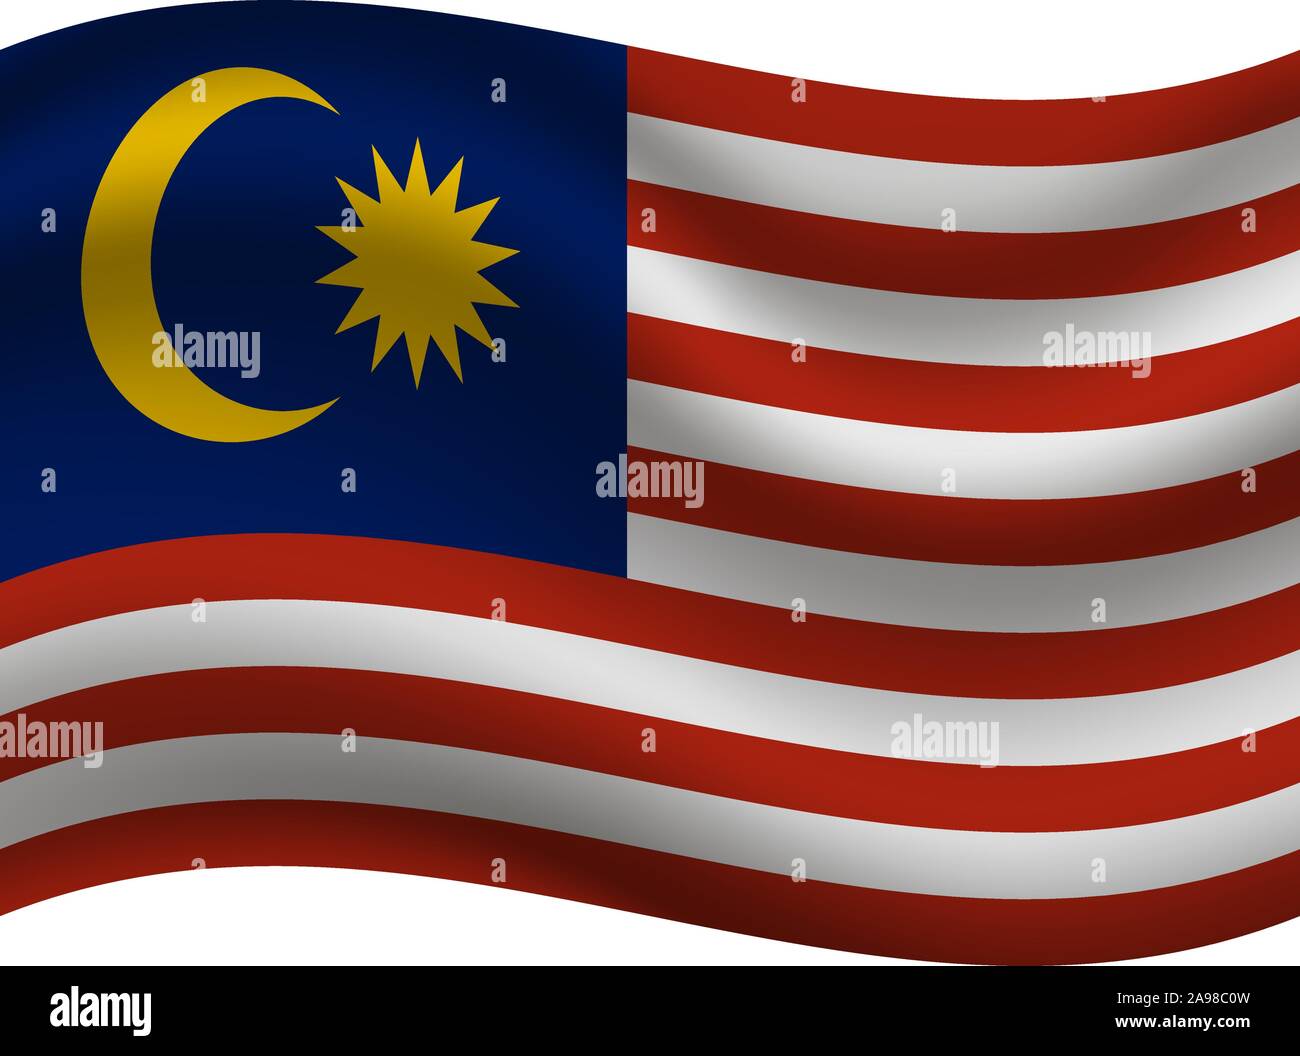 Drapeau national de Malaisie . couleurs d'origine et de proportion. Illustration vectorielle, simplement, en provenance de pays. Illustration de Vecteur